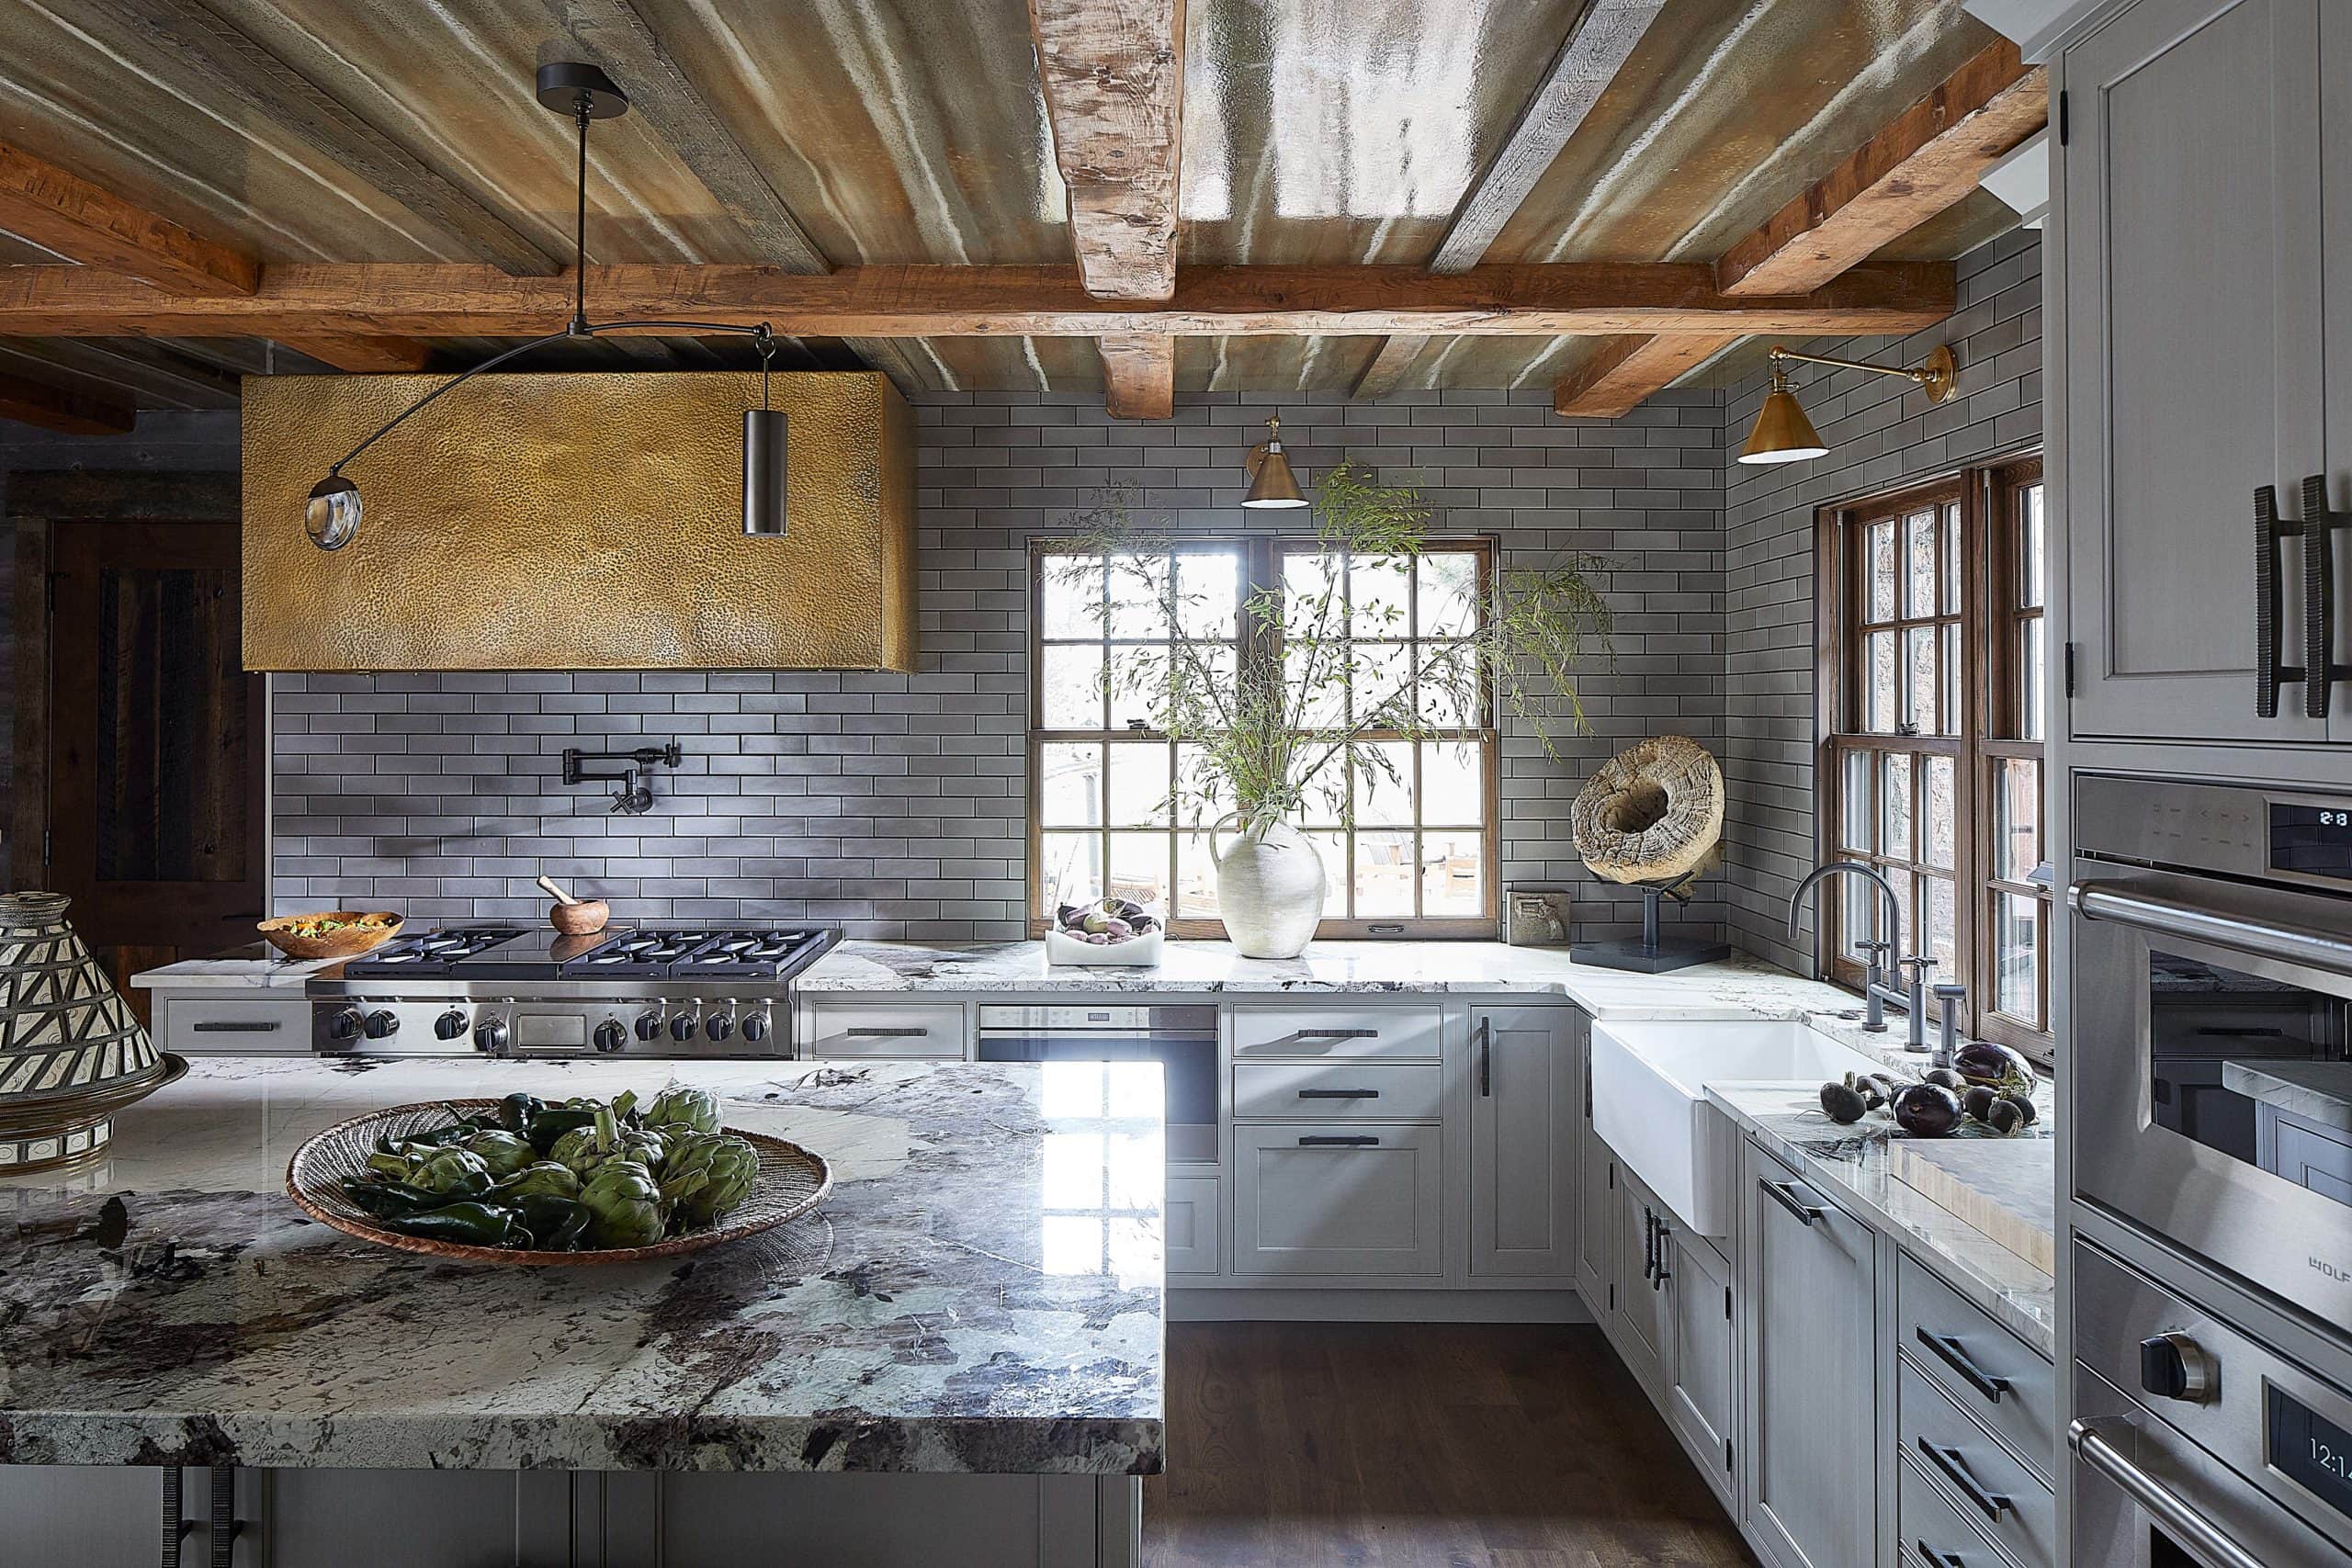 Modern ranch interior design kitchen with a custom hammered brass range hood. Farmhouse sink.